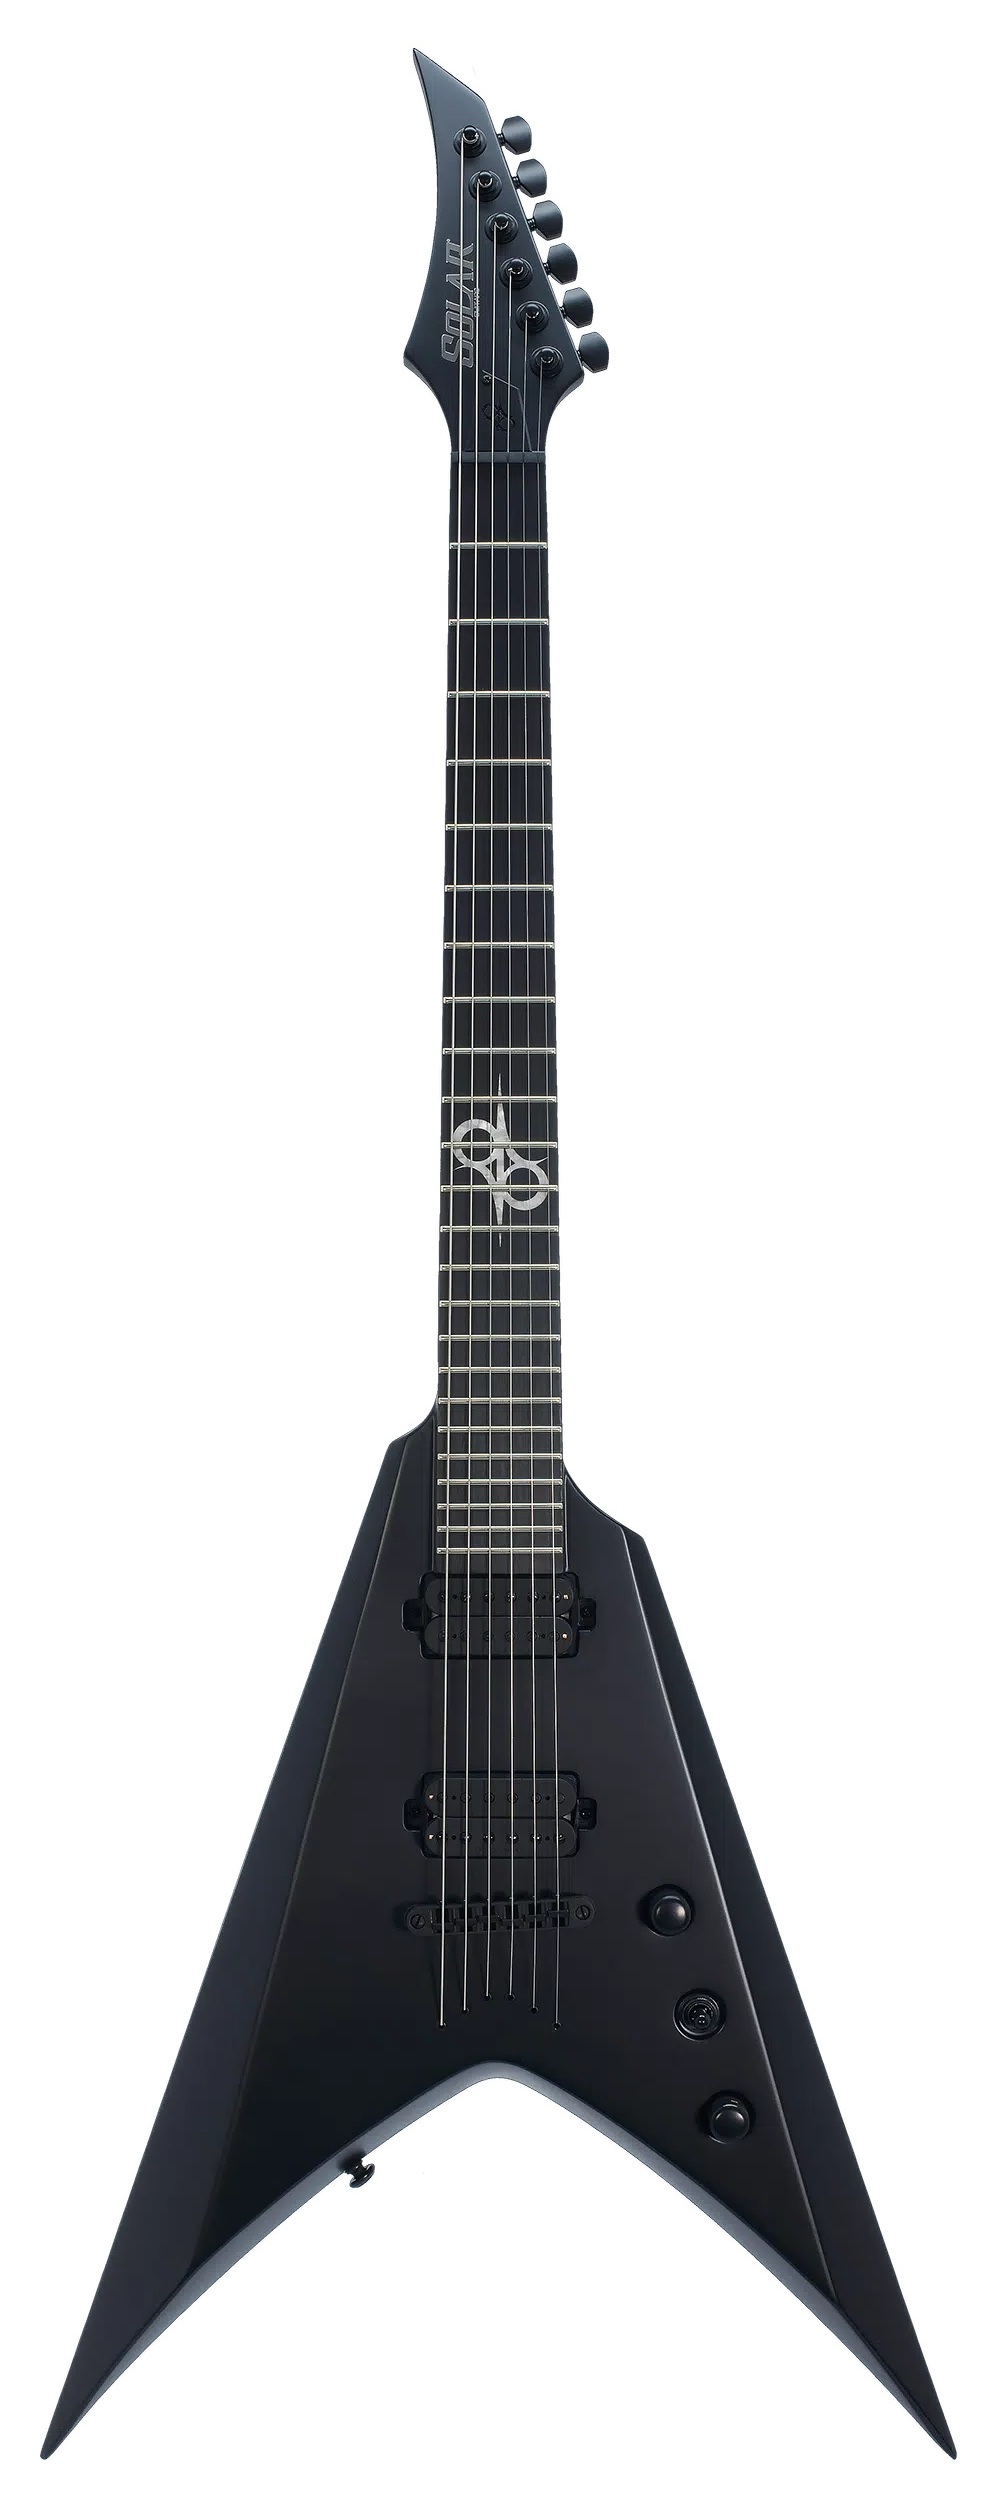 Электрогитары Solar Guitars V2.6C (чехол в комплекте) ракетка для настольного тенниса дерево 10 мм чехол silapro 132 006